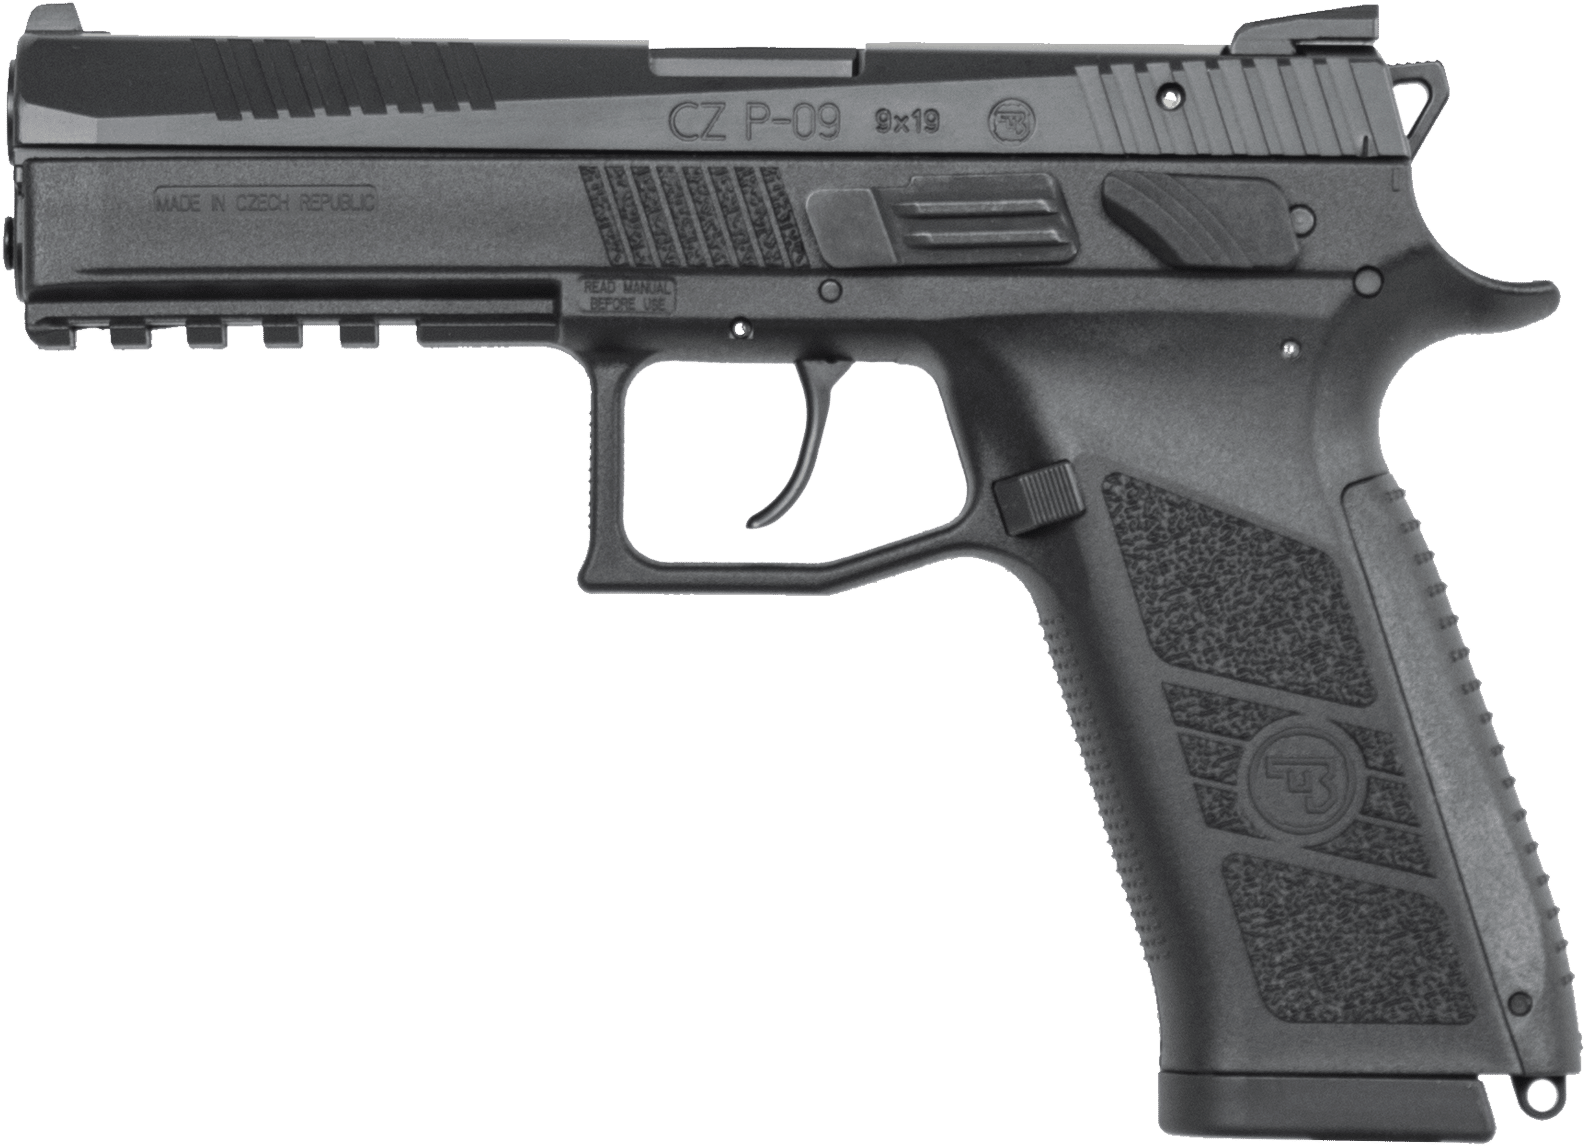 C Z P09 Semi Automatic Pistol PNG